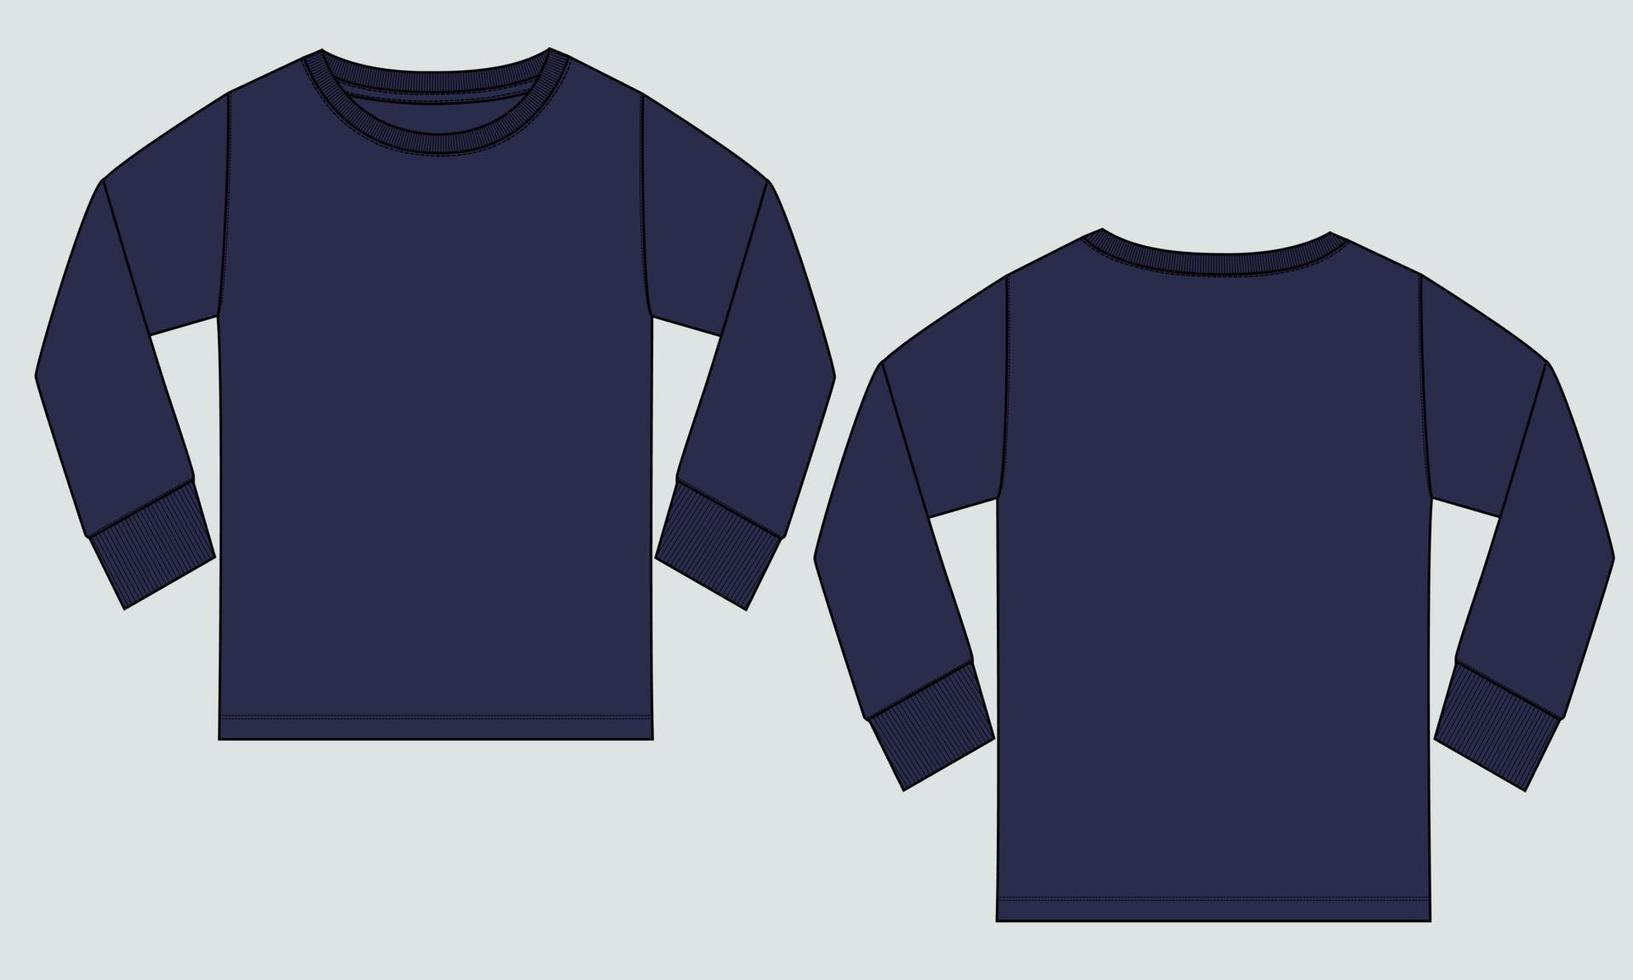 camiseta de manga comprida t-shirt de moda técnica esboço plano ilustração modelo frente e vista traseira. vetor